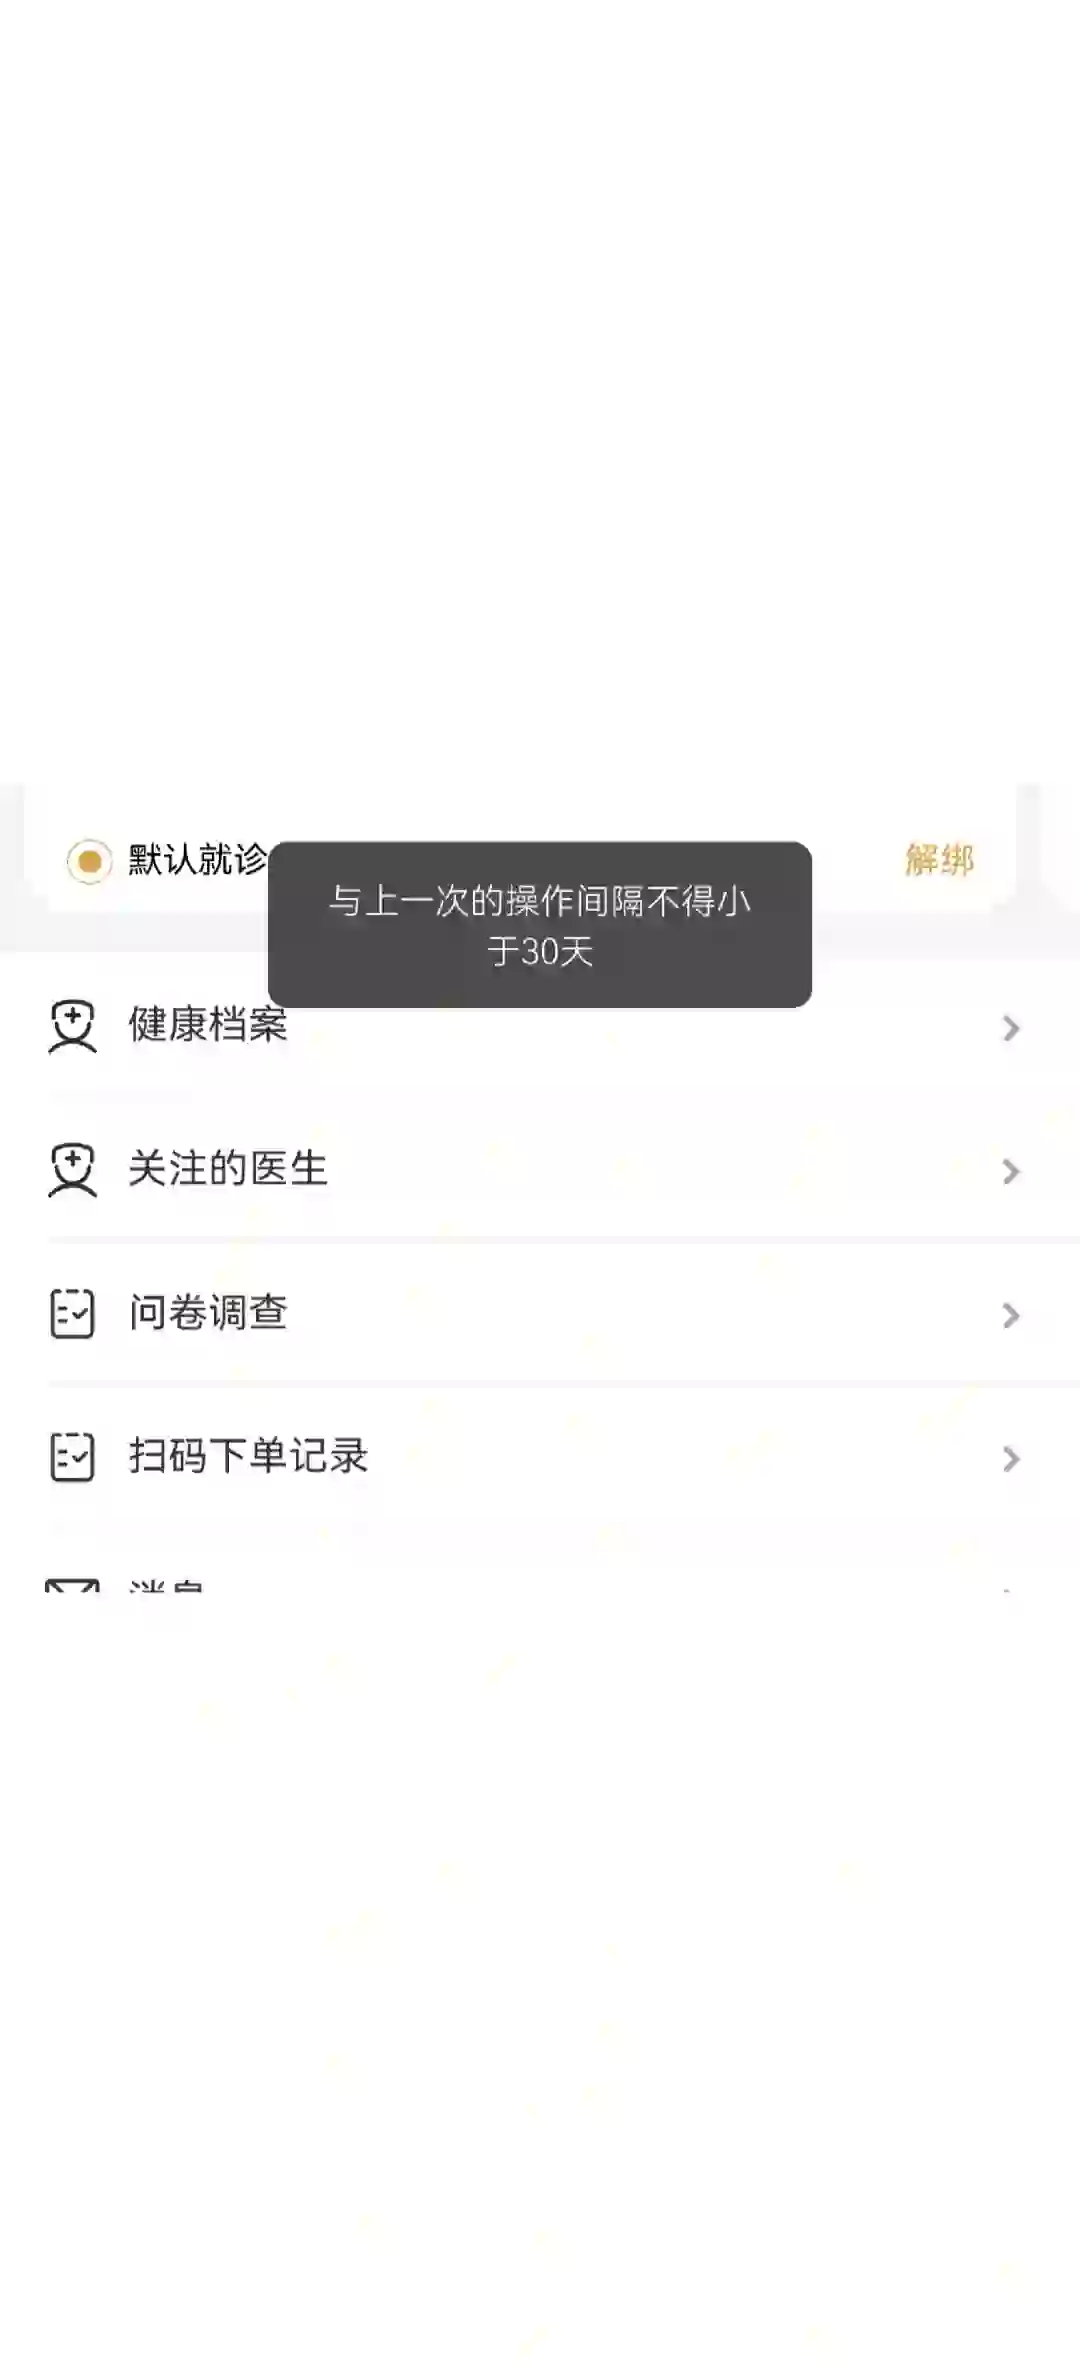 广安门医院小程序及app是我用过最烂的